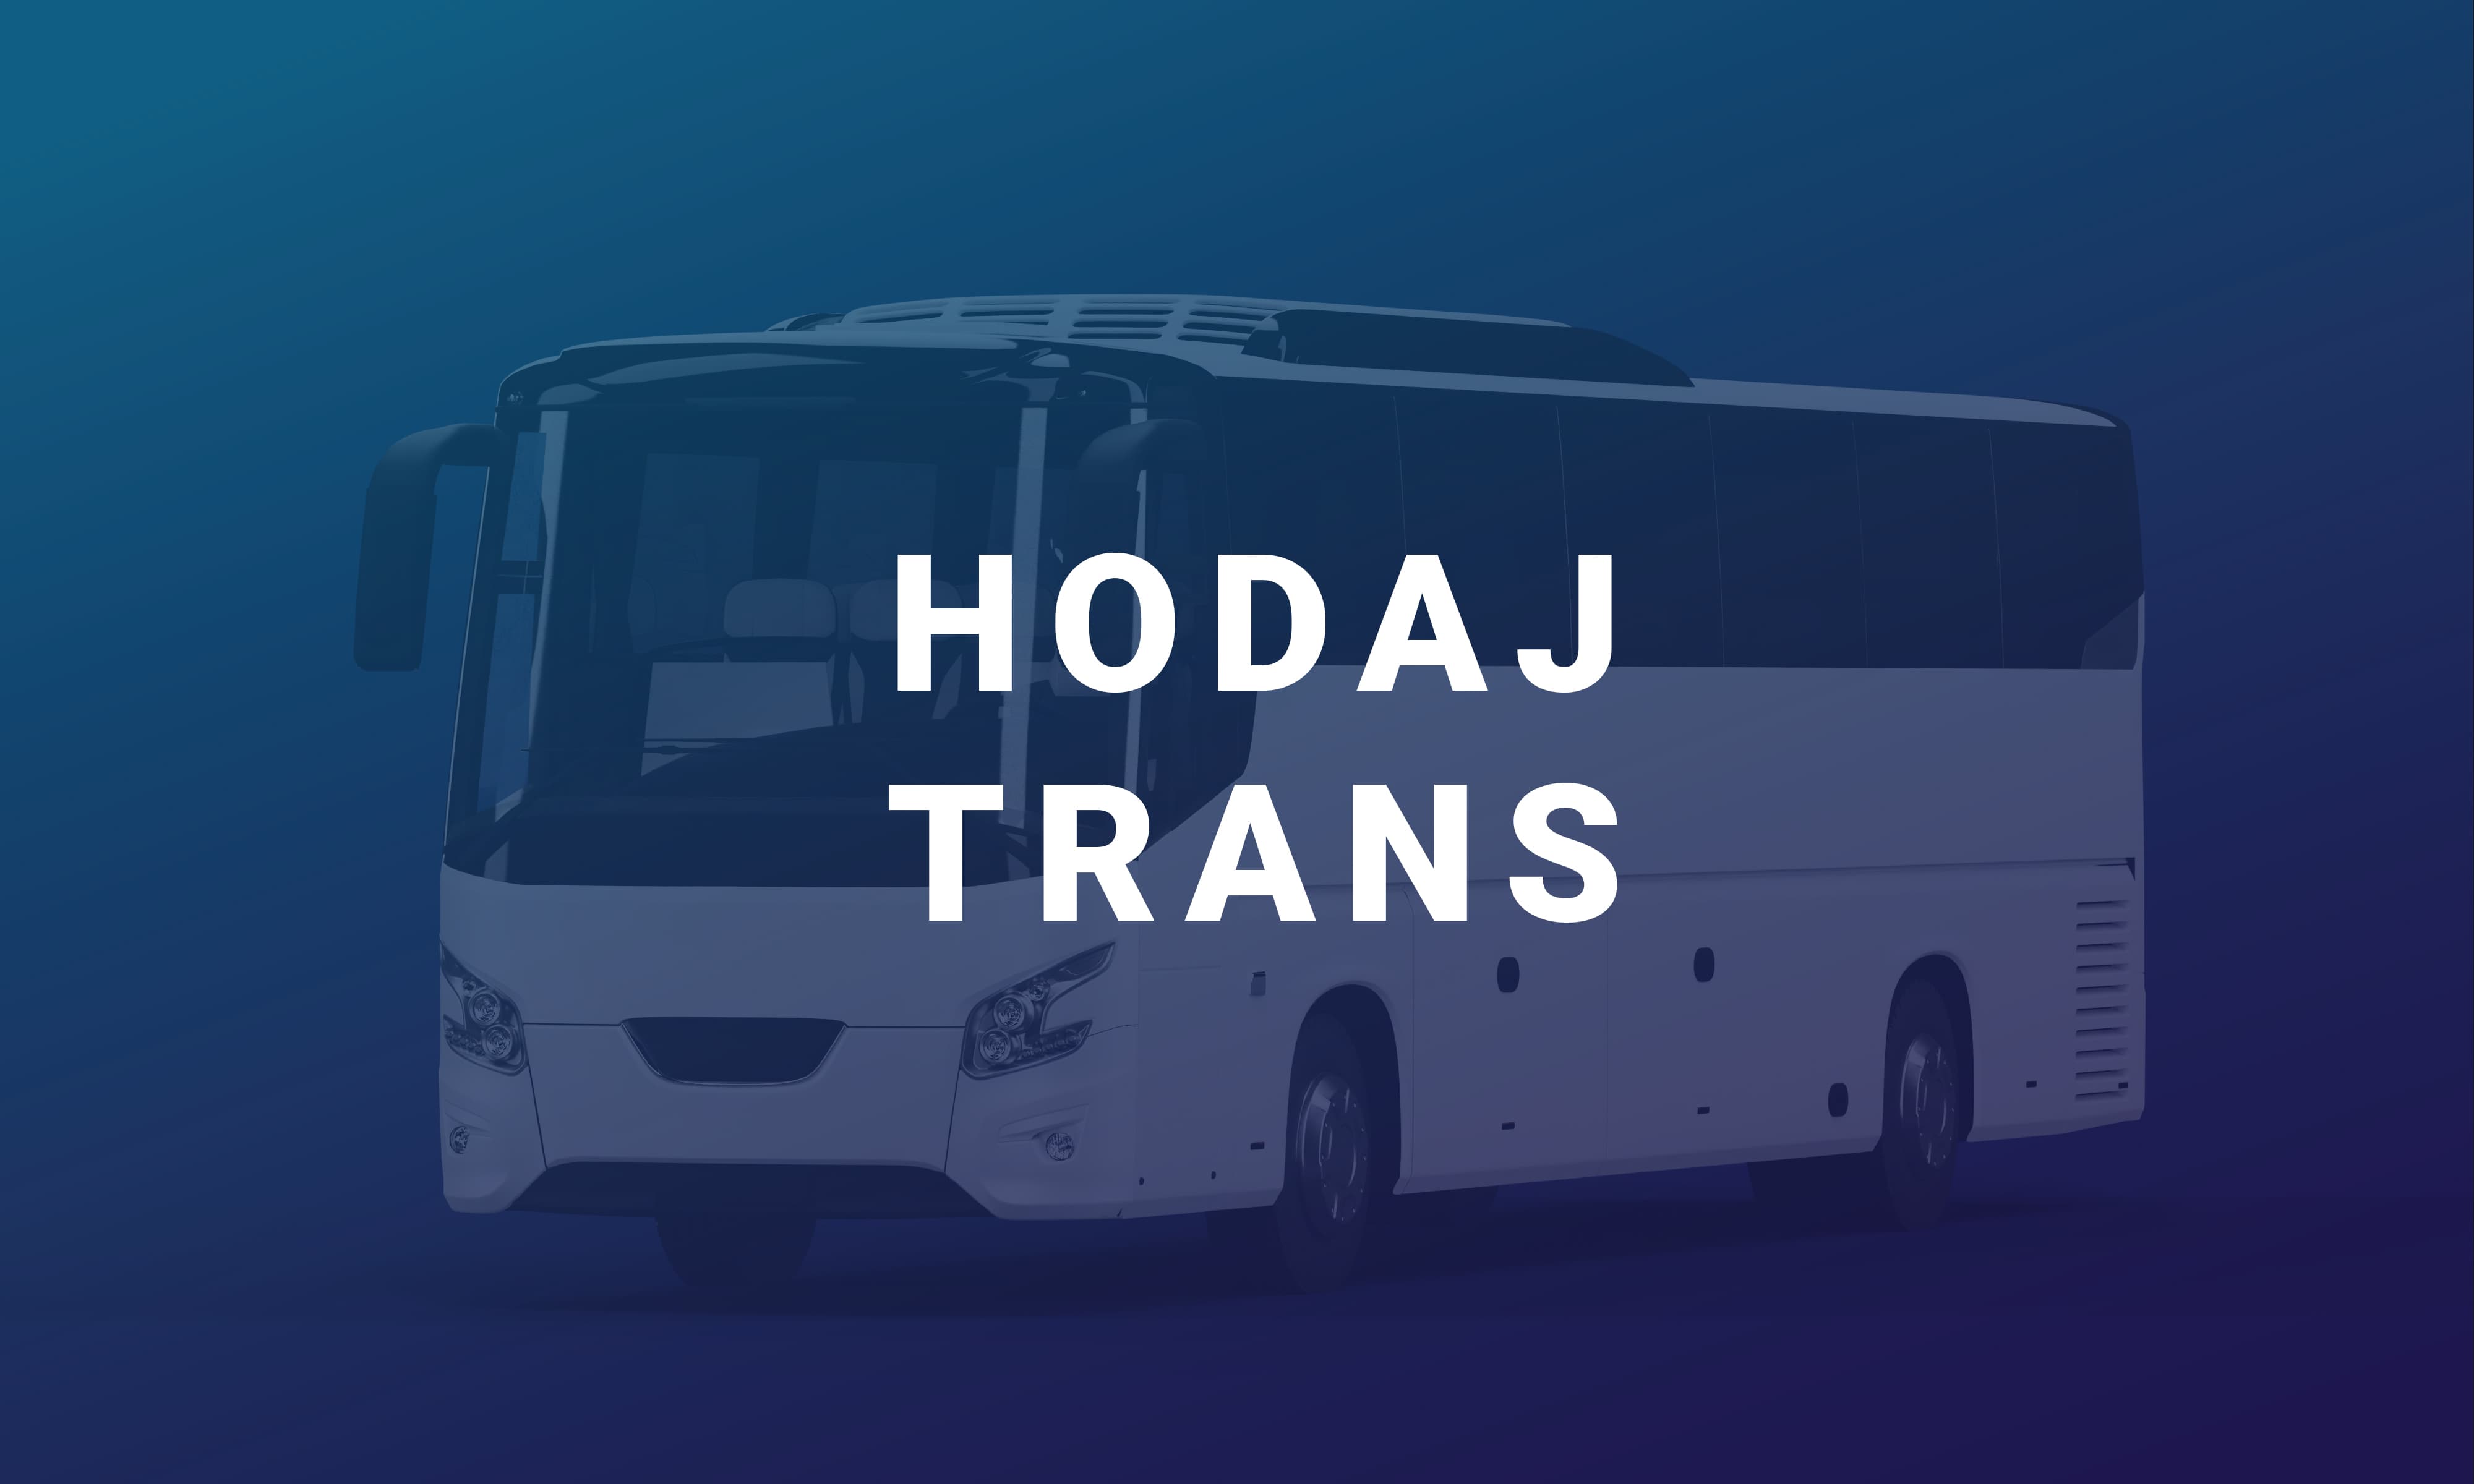 Hodaj Trans është një linjë ndërqytetase me qendër në Vlorë që ofron një shërbim çdo ditë për në Berat dhe kthim.